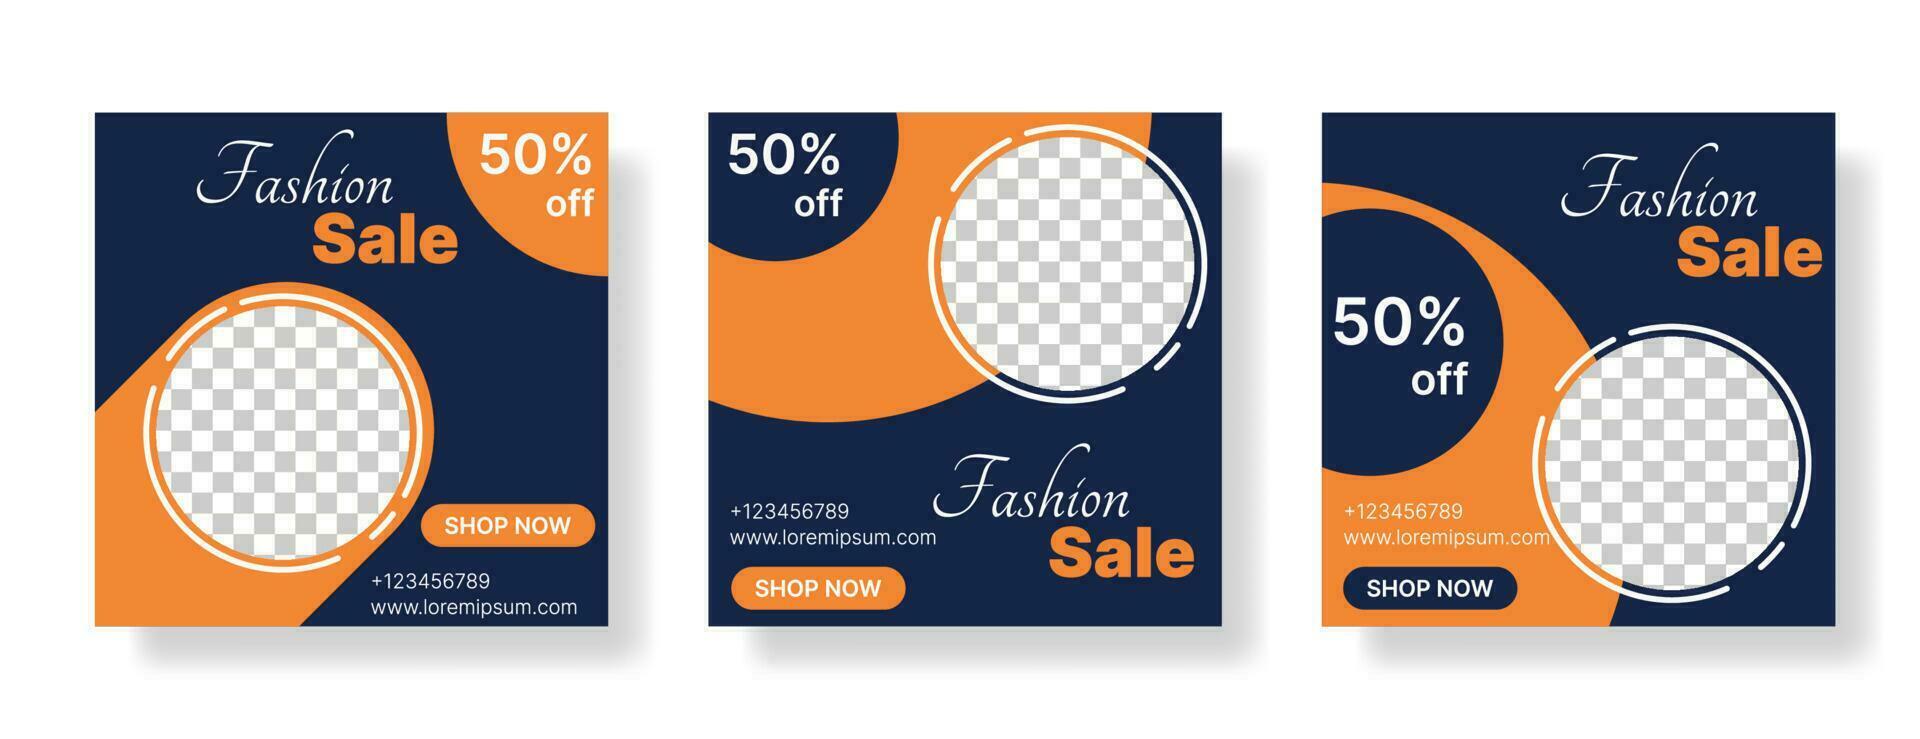 Sammlung von Modeverkaufsbannern für Social-Media-Posts in dunkelblauer und oranger Farbe. Vektor-Illustration vektor